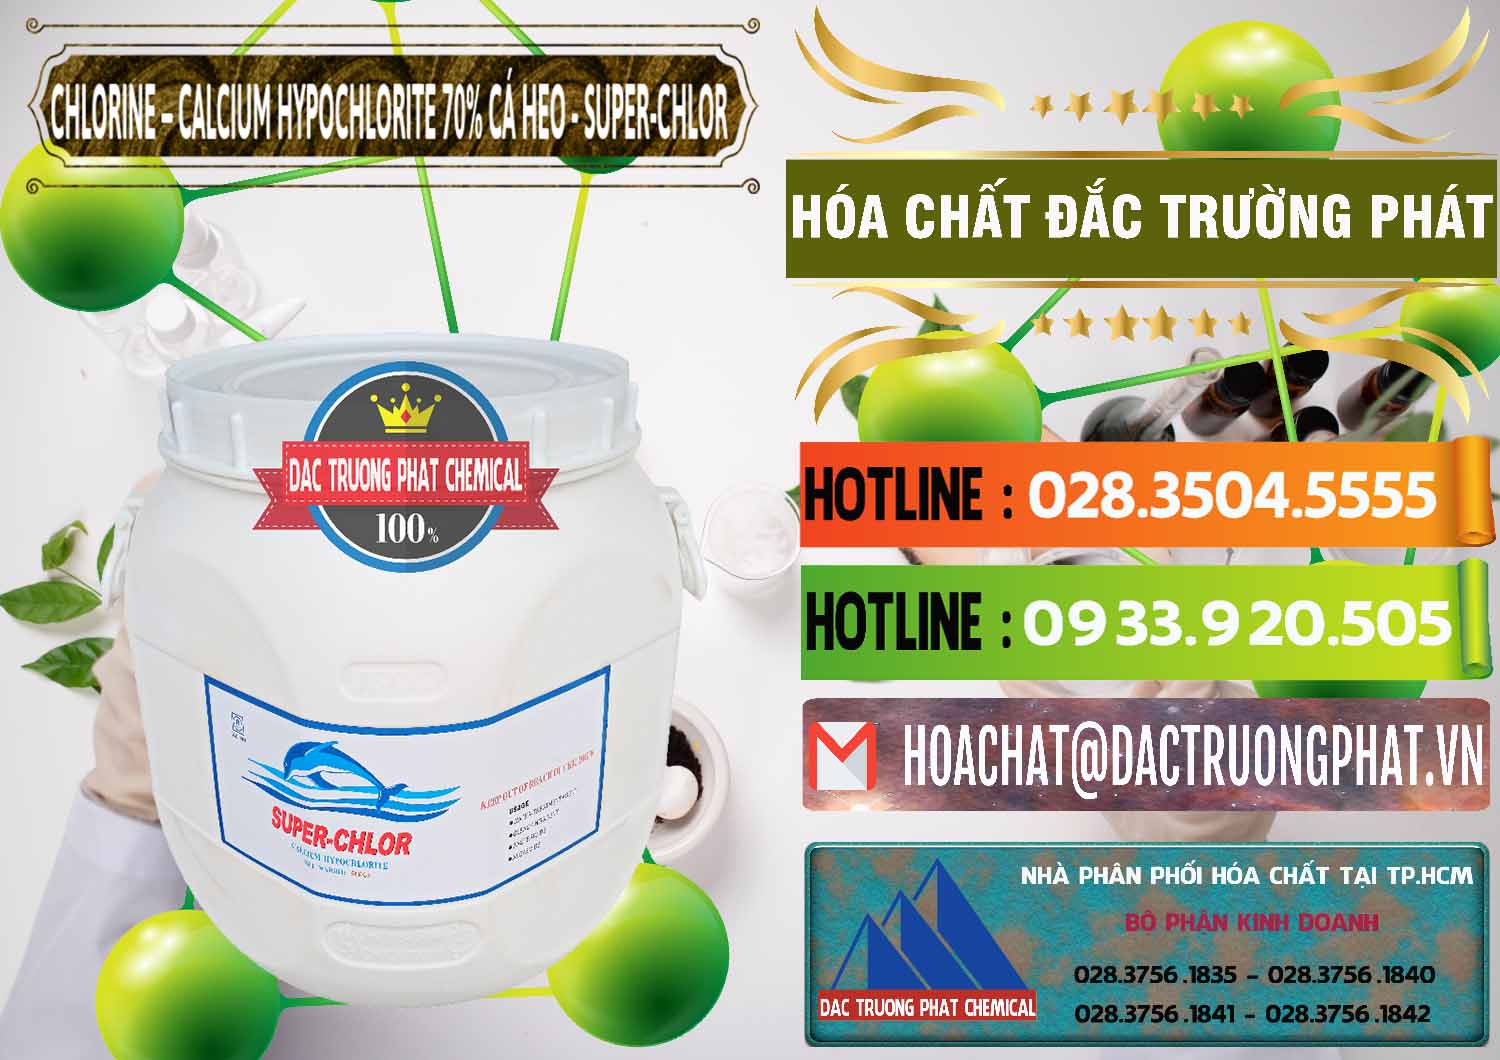 Công ty chuyên cung cấp & bán Clorin - Chlorine Cá Heo 70% Super Chlor Trung Quốc China - 0058 - Nơi chuyên nhập khẩu & cung cấp hóa chất tại TP.HCM - cungcaphoachat.com.vn